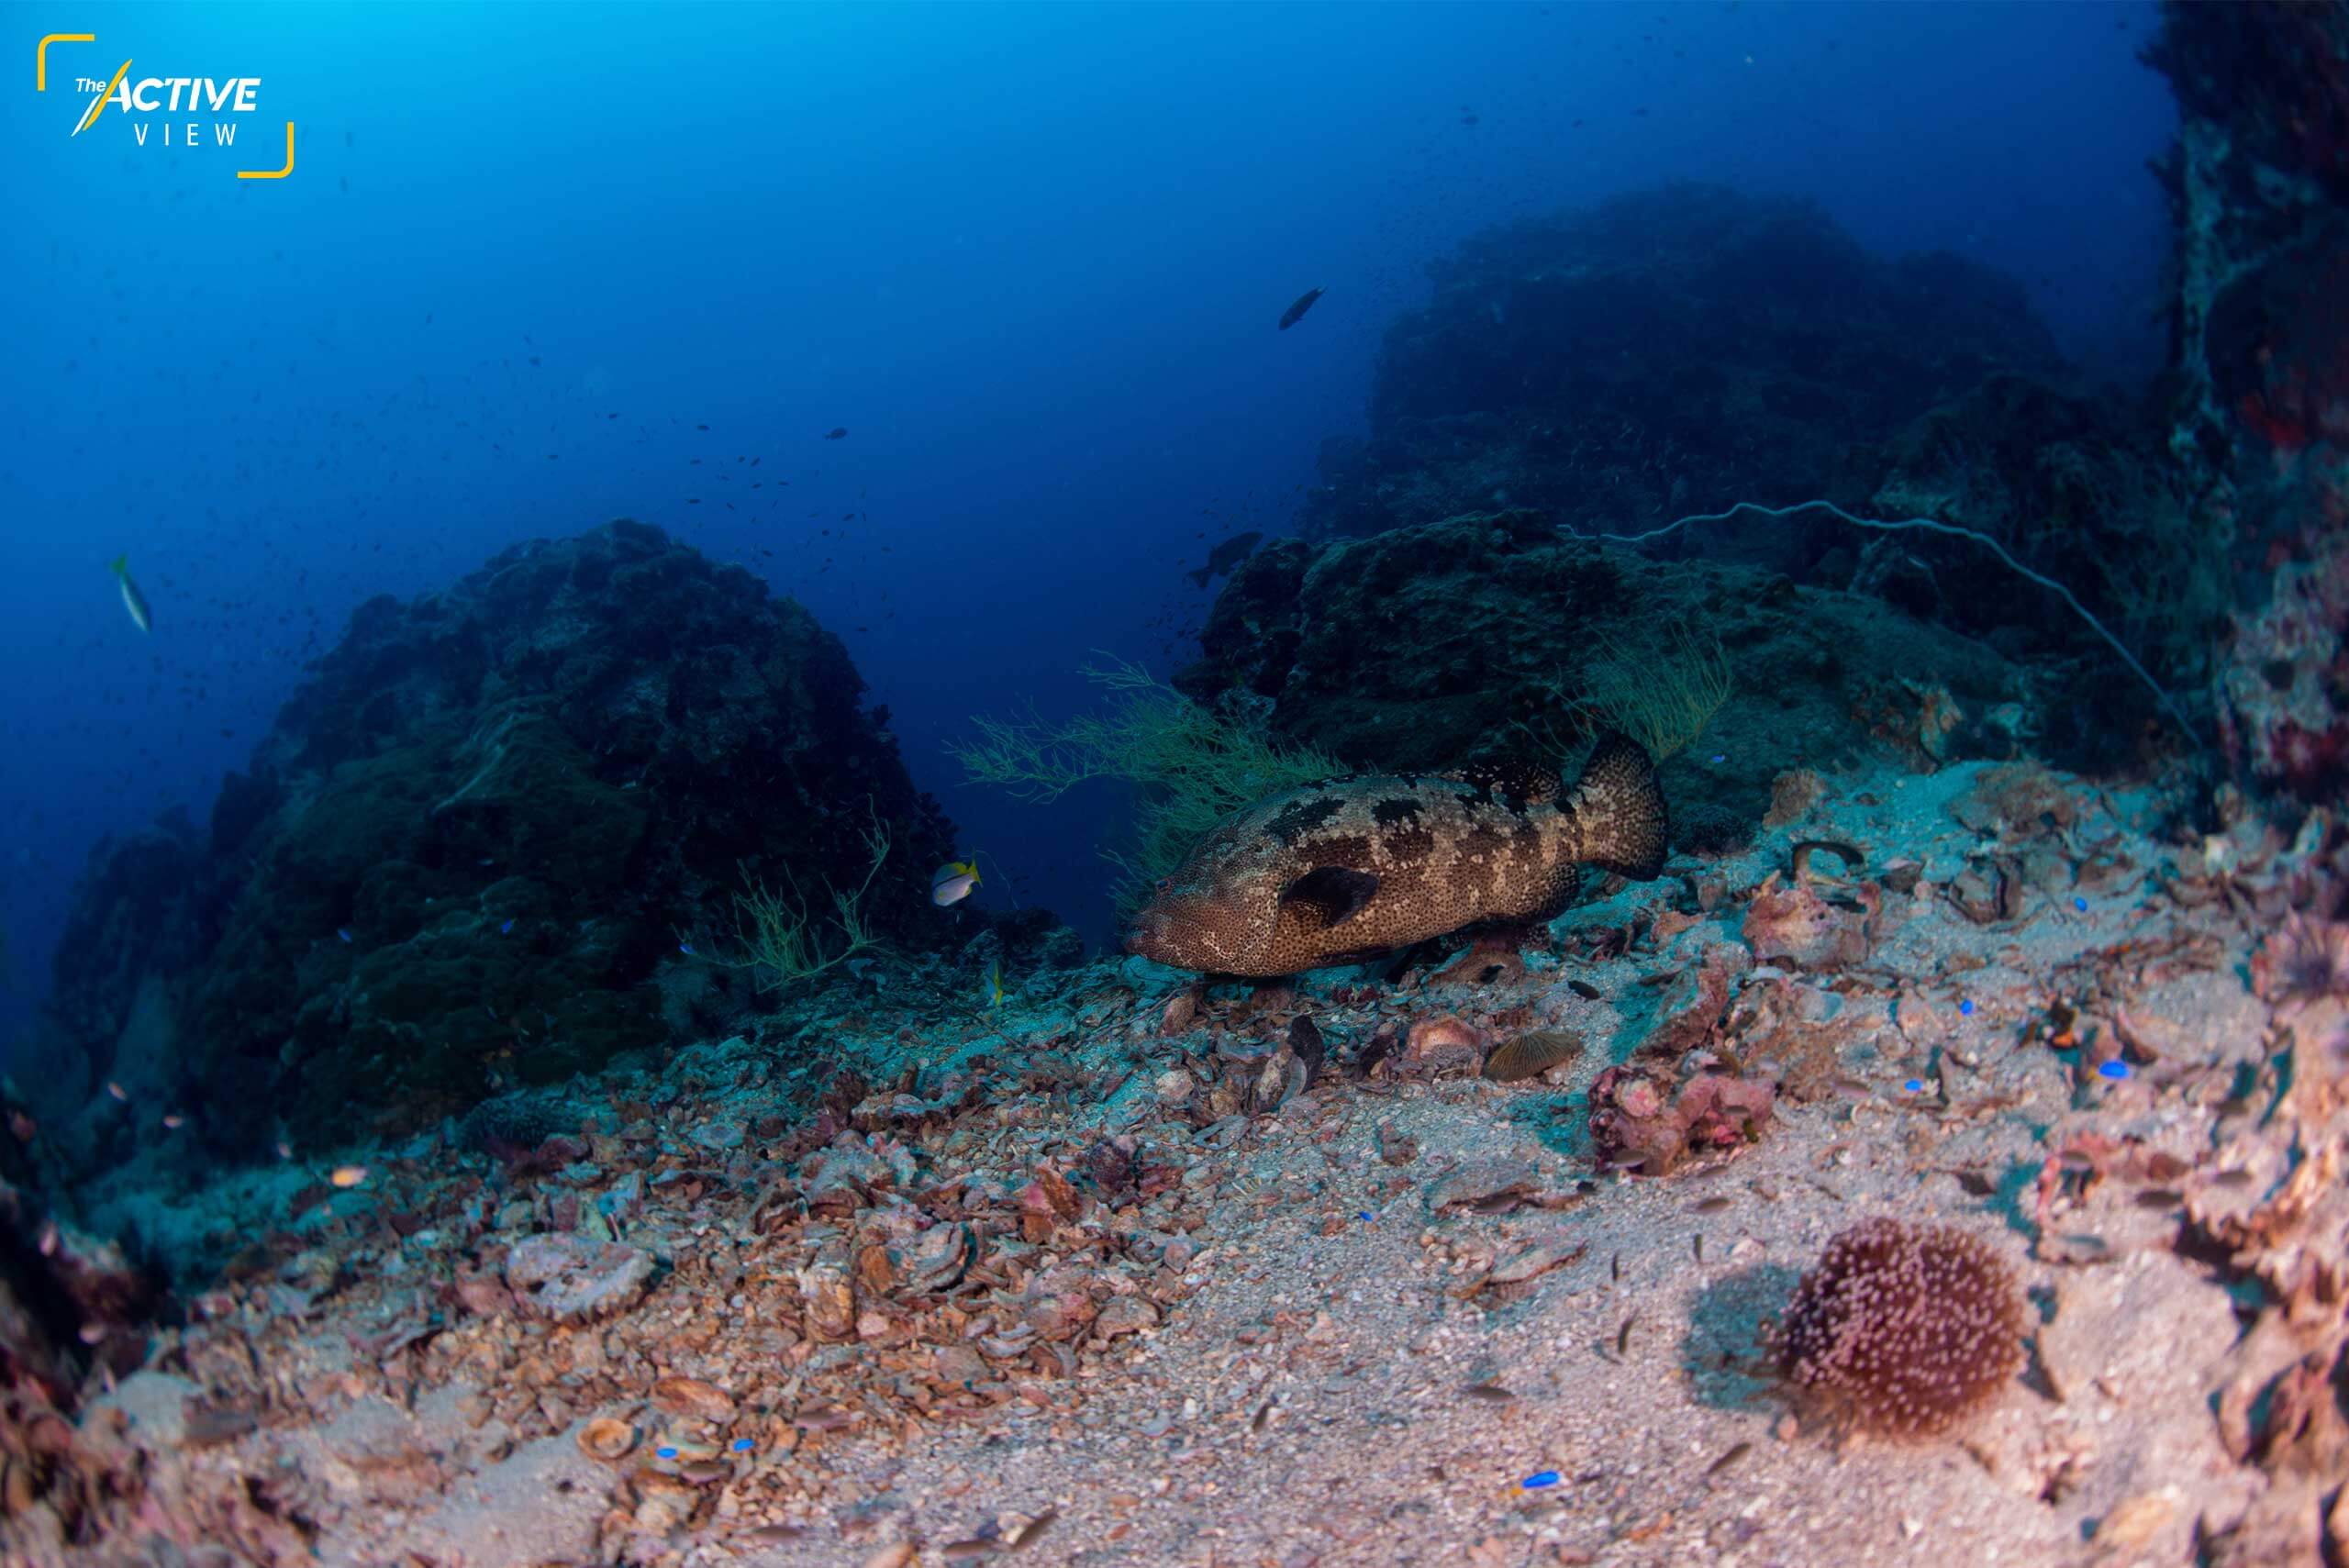 รอบเกาะ มีแหล่งดำน้ำมากกว่า 30 จุด และหลากหลาย ทั้งแนวปะการัง กองหิน เรือจม หรือแนวปะการังเทียม ที่สำคัญยังดำน้ำได้ตลอดทั้งปี
.
ภาพ : Thai News Pix